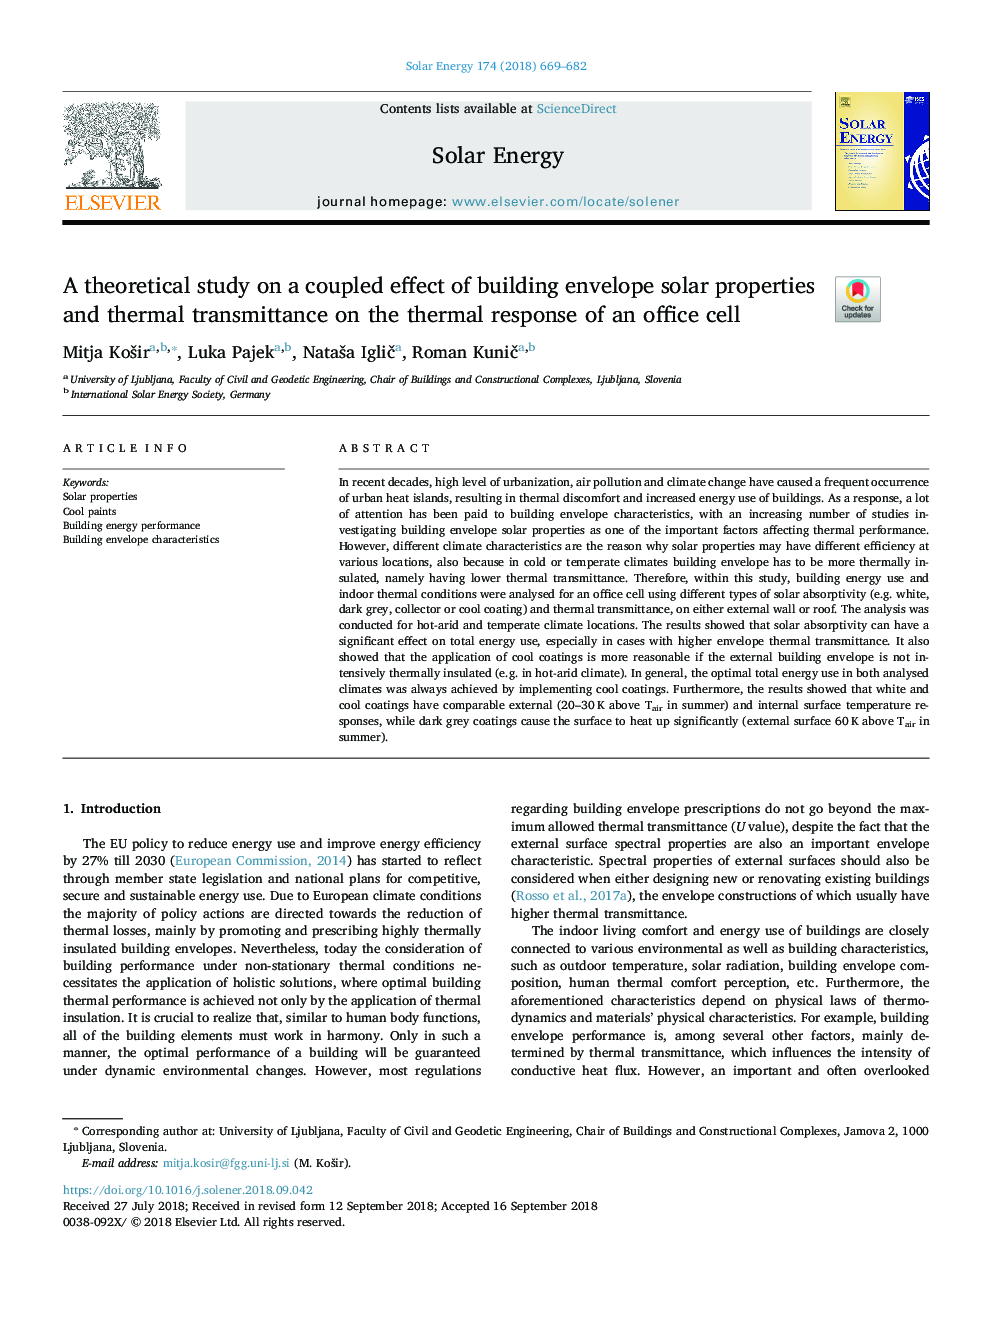 یک مطالعه تئوری در مورد اثر متقابل ساختمان خواص خورشیدی و انتقال حرارت در پاسخ گرمائی یک سلول اداری